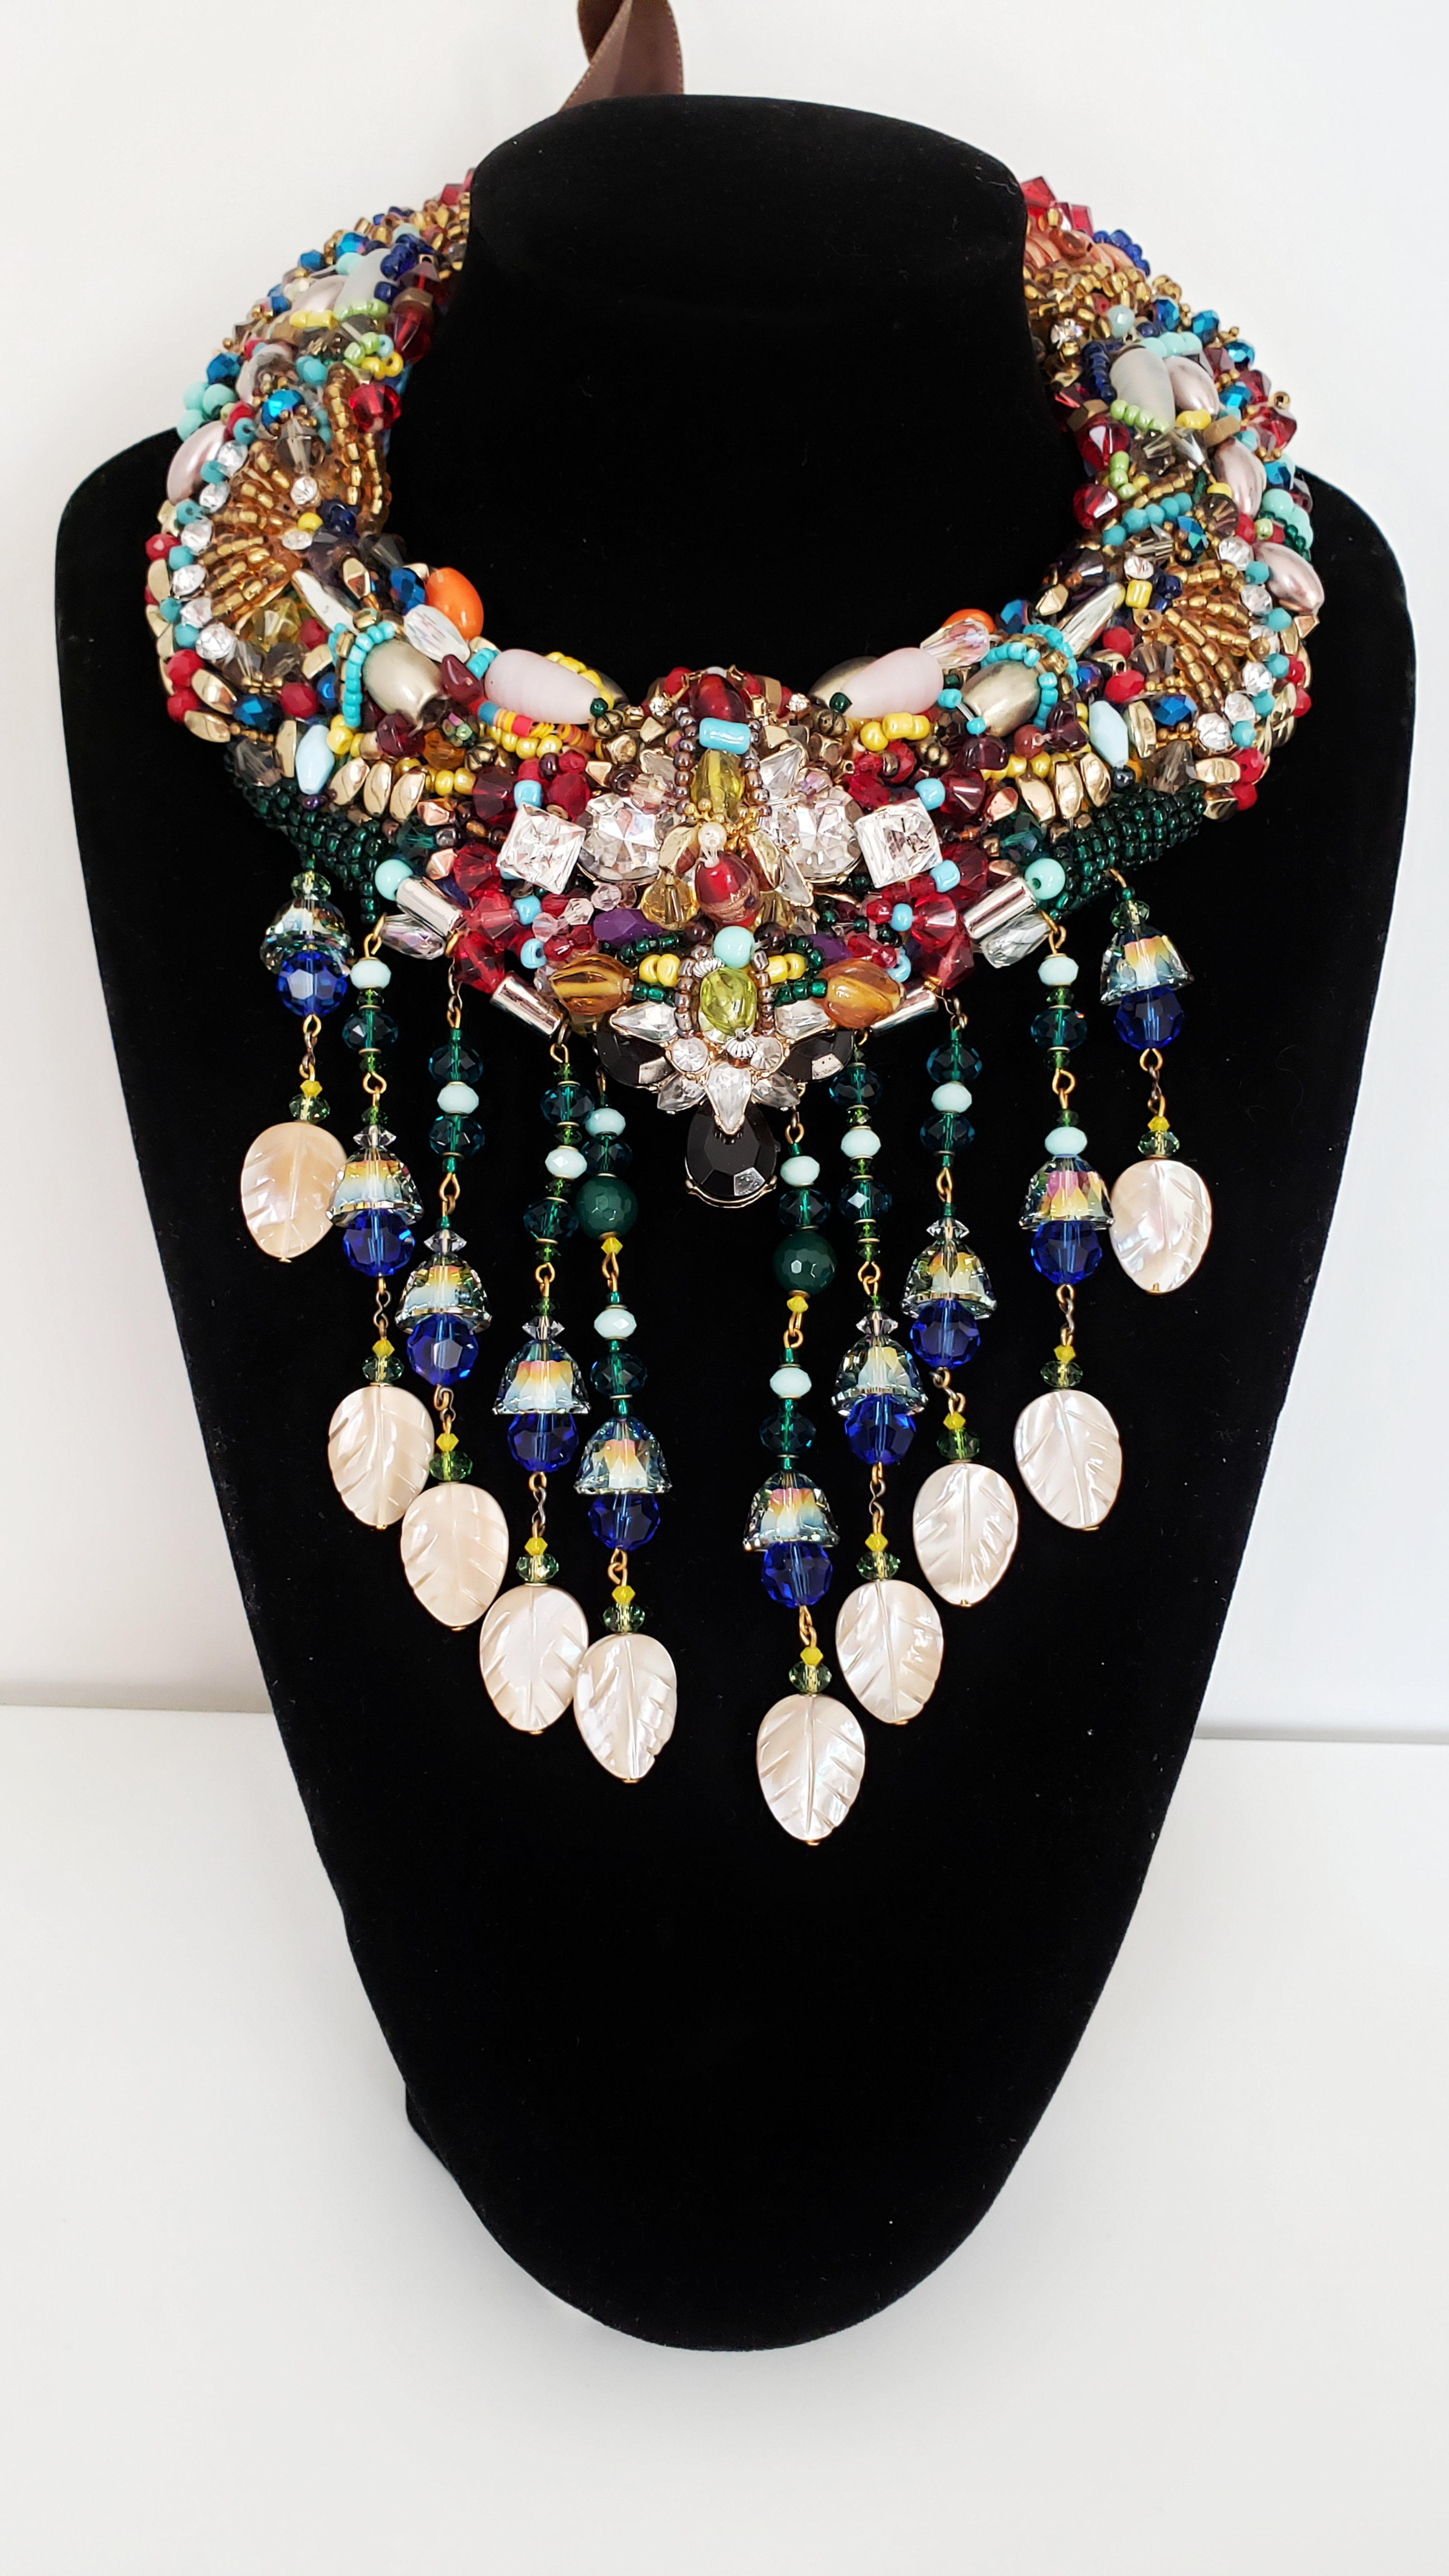 Ce collier multiperles à pampilles en nacre rehaussé de Swarovski est superbement stylé et se distingue par son éclat, ses combinaisons de couleurs et ses détails.

Ce collier présente une combinaison frappante de perles de verre assorties, de